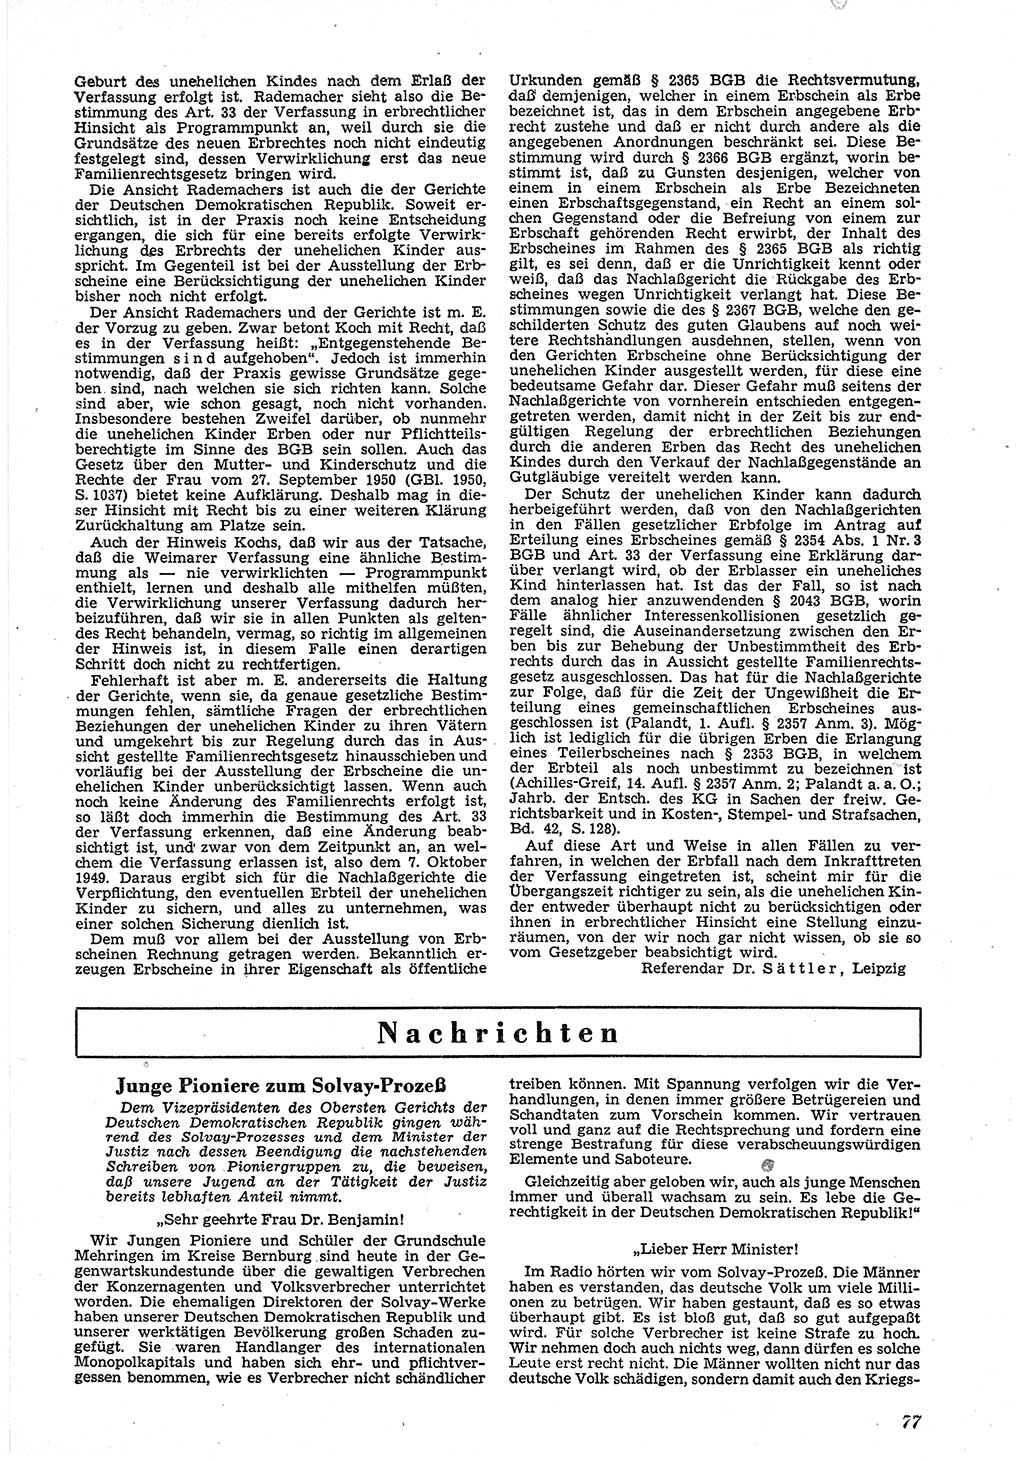 Neue Justiz (NJ), Zeitschrift für Recht und Rechtswissenschaft [Deutsche Demokratische Republik (DDR)], 5. Jahrgang 1951, Seite 77 (NJ DDR 1951, S. 77)